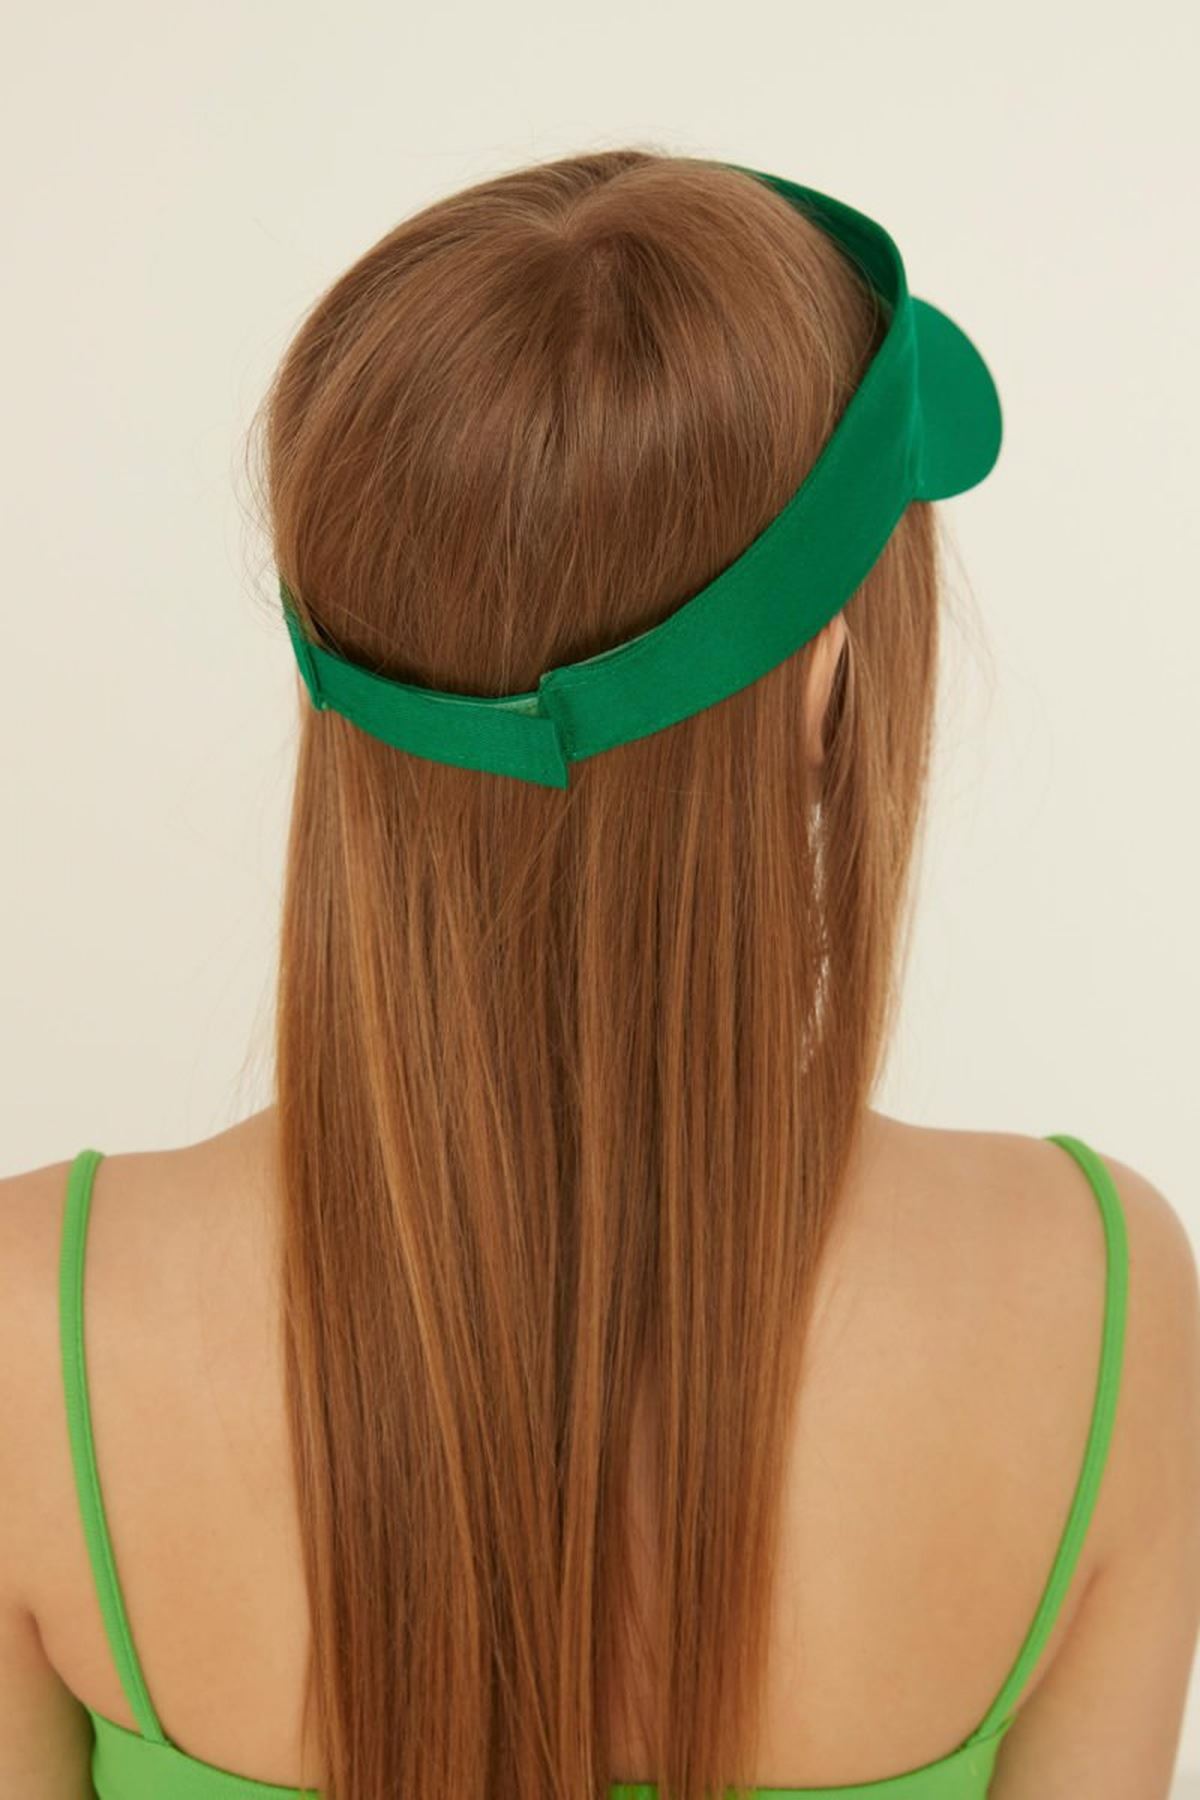 Pamuk Kumaş Tenisçi Kadın Şapka-Yeşil